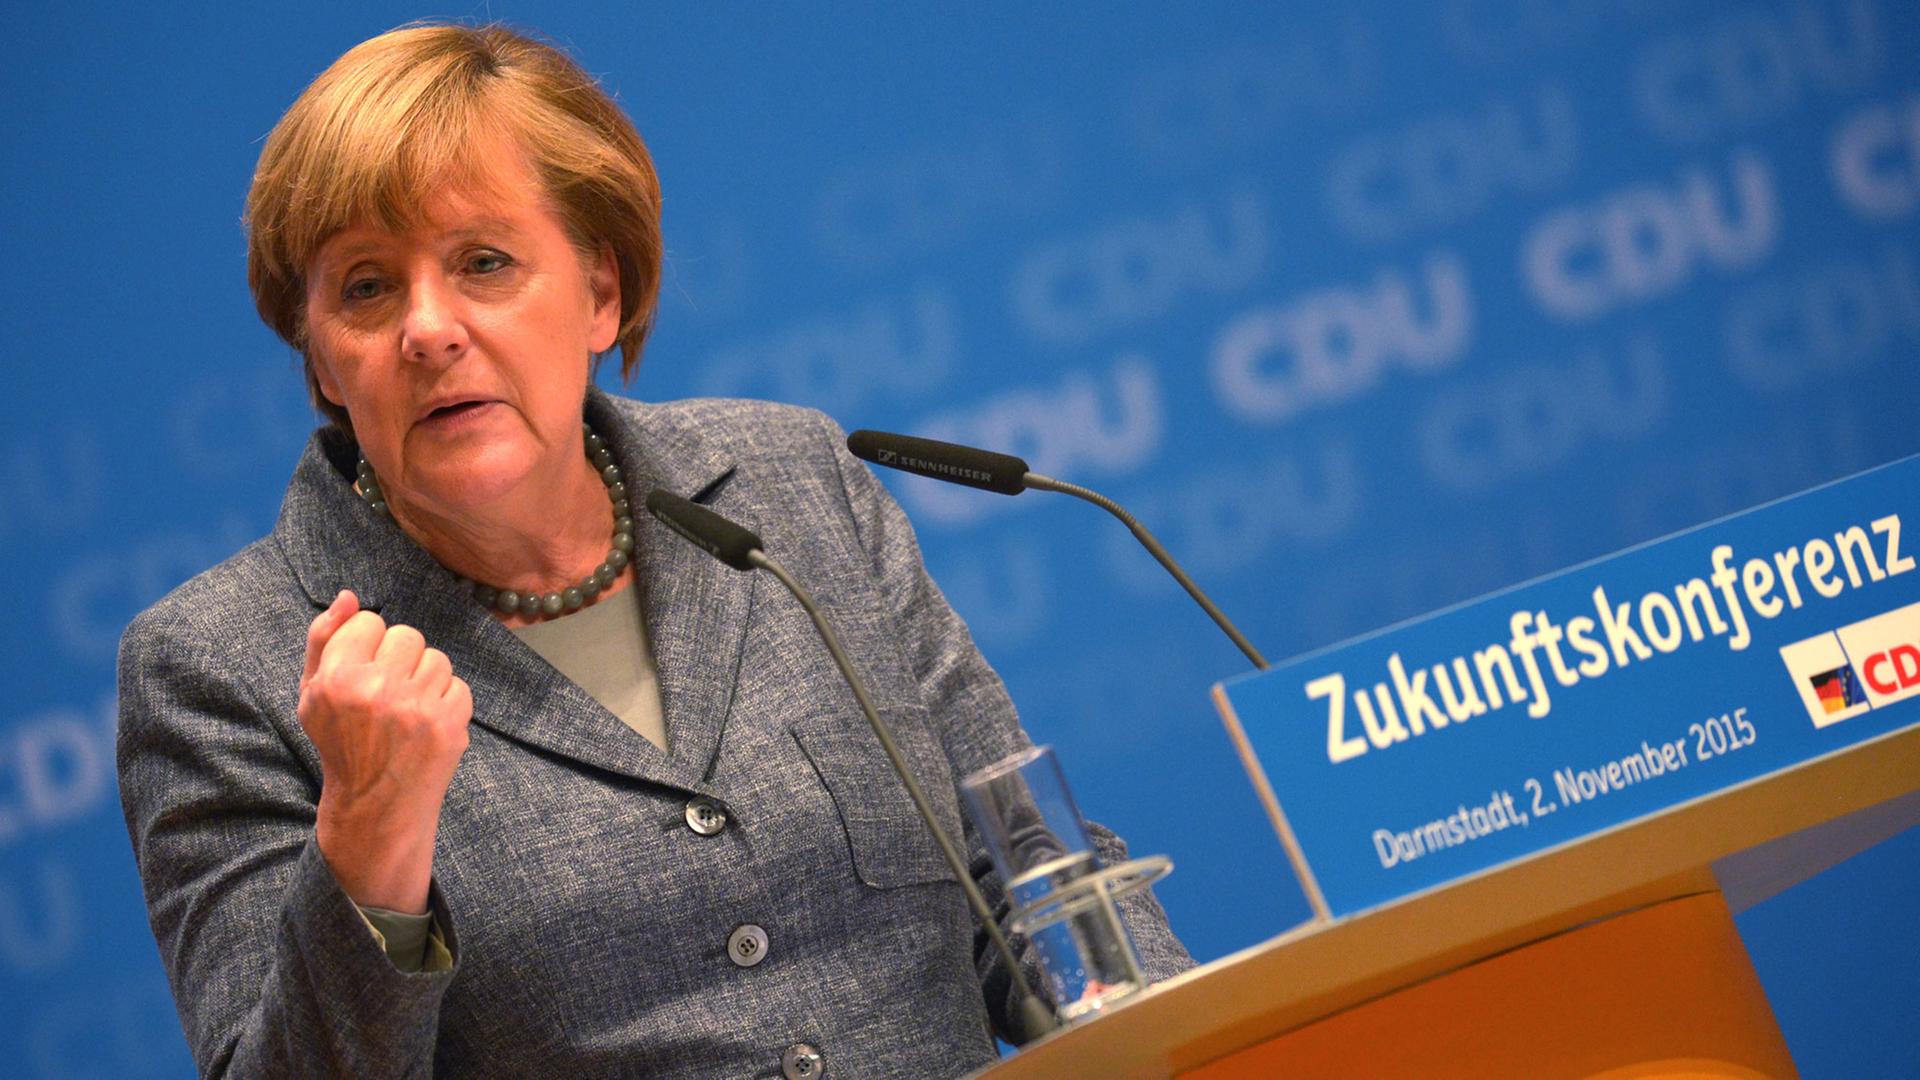 Bundeskanzlerin Angela Merkel (CDU) spricht am 02.11.2015 in Darmstadt (Hessen) auf der abschließenden Zukunftskonferenz ihrer Partei.